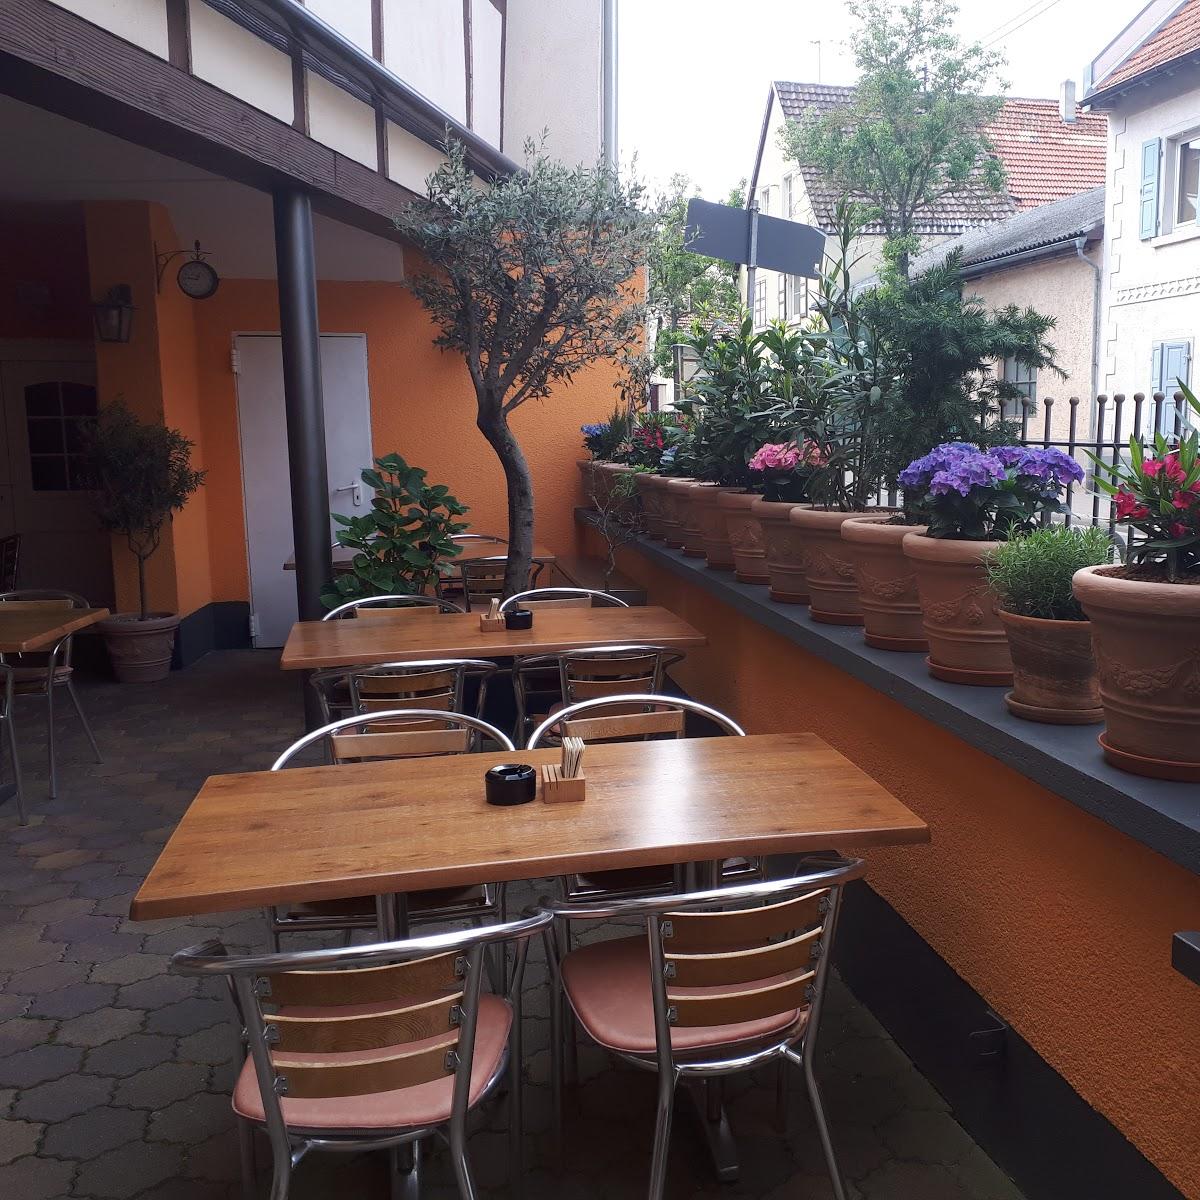 Restaurant "Restaurant Zum Römer" in  Gau-Odernheim